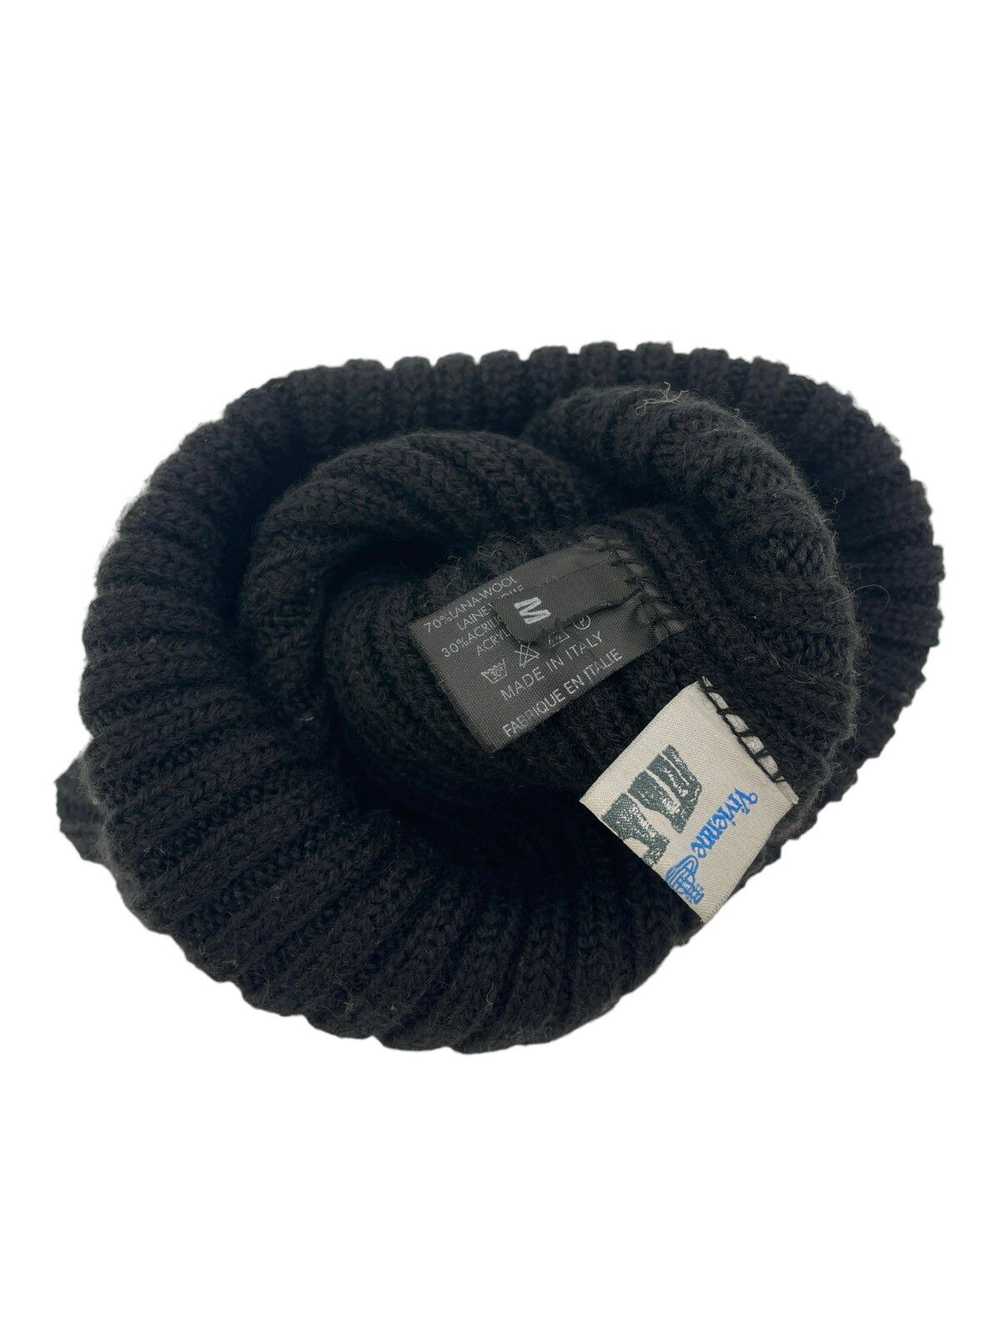 Vivienne Westwood Wool Knit Orb Hat - image 3